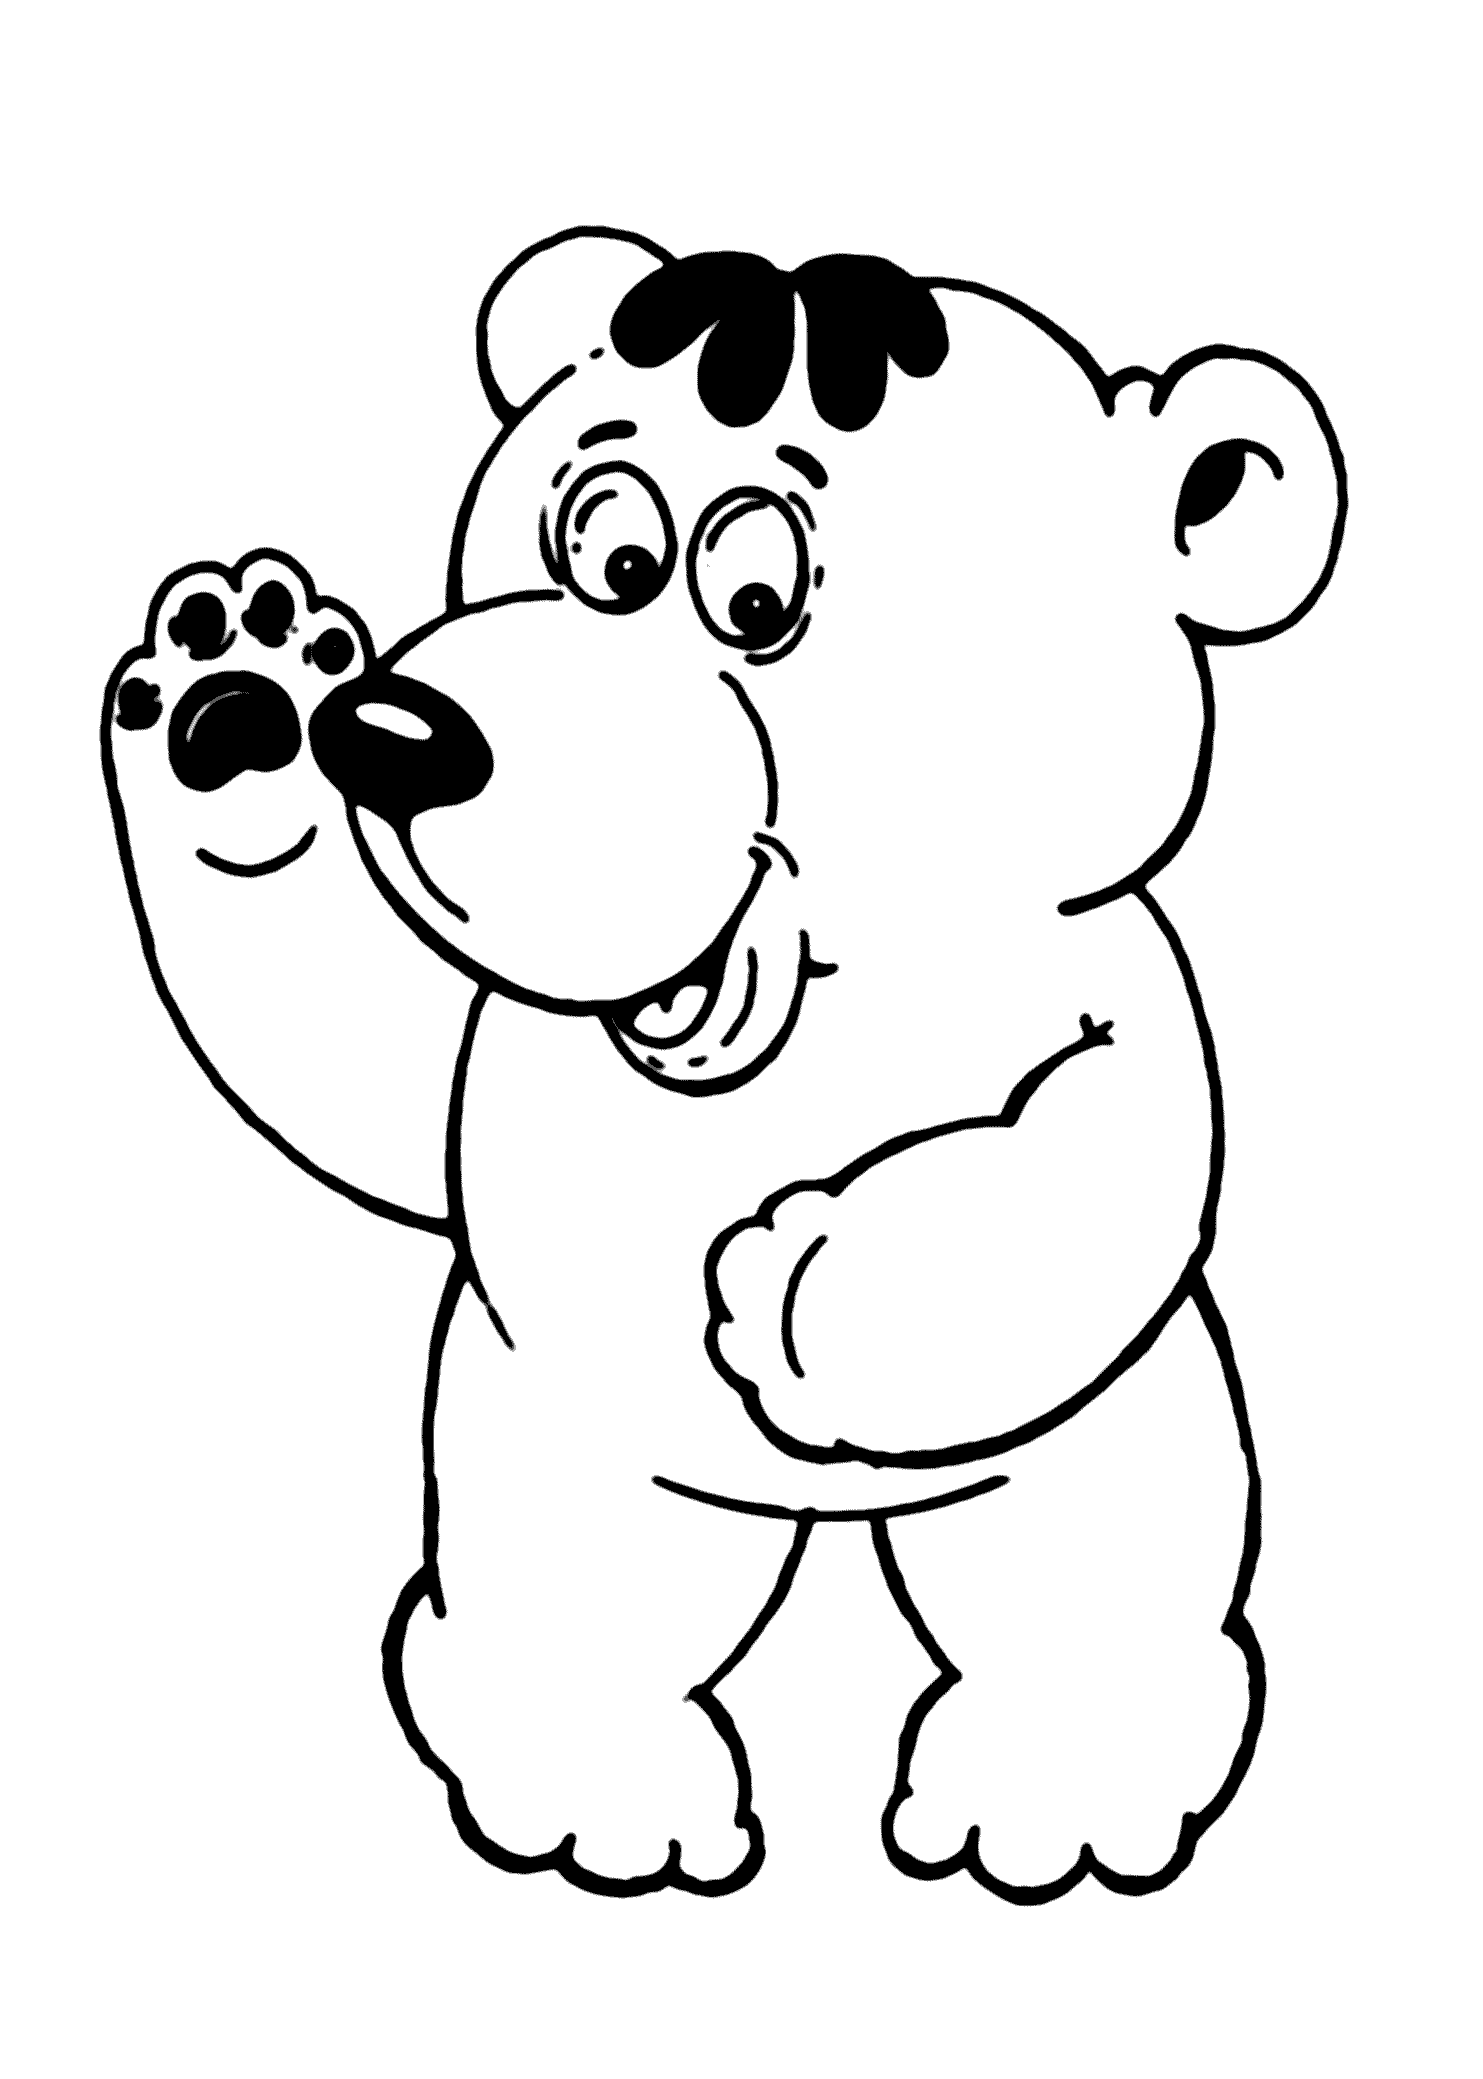 Распечатка медведя. Медвежонок раскраска для детей. Медведь раскраска. Раскраска "мишки". Медведь раскраска для детей.